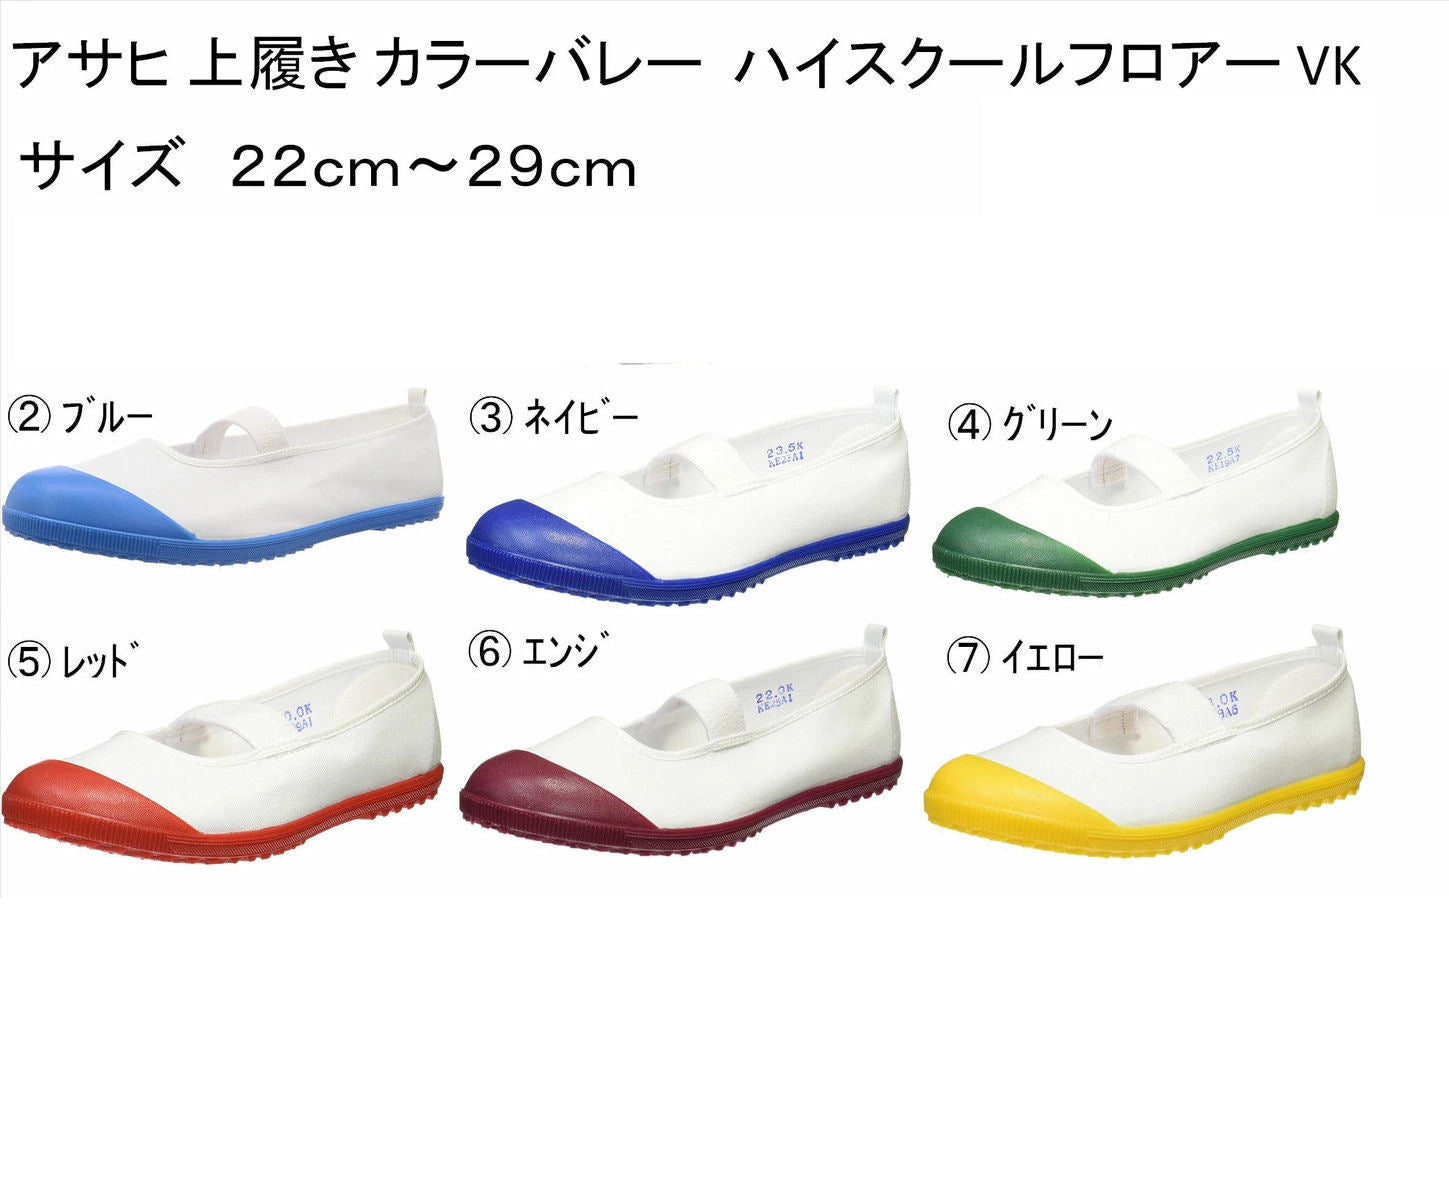 【アサヒ】上履き カラーバレー スクールシューズ 白 学校指定 靴 ASAHI 日本製 KD38003